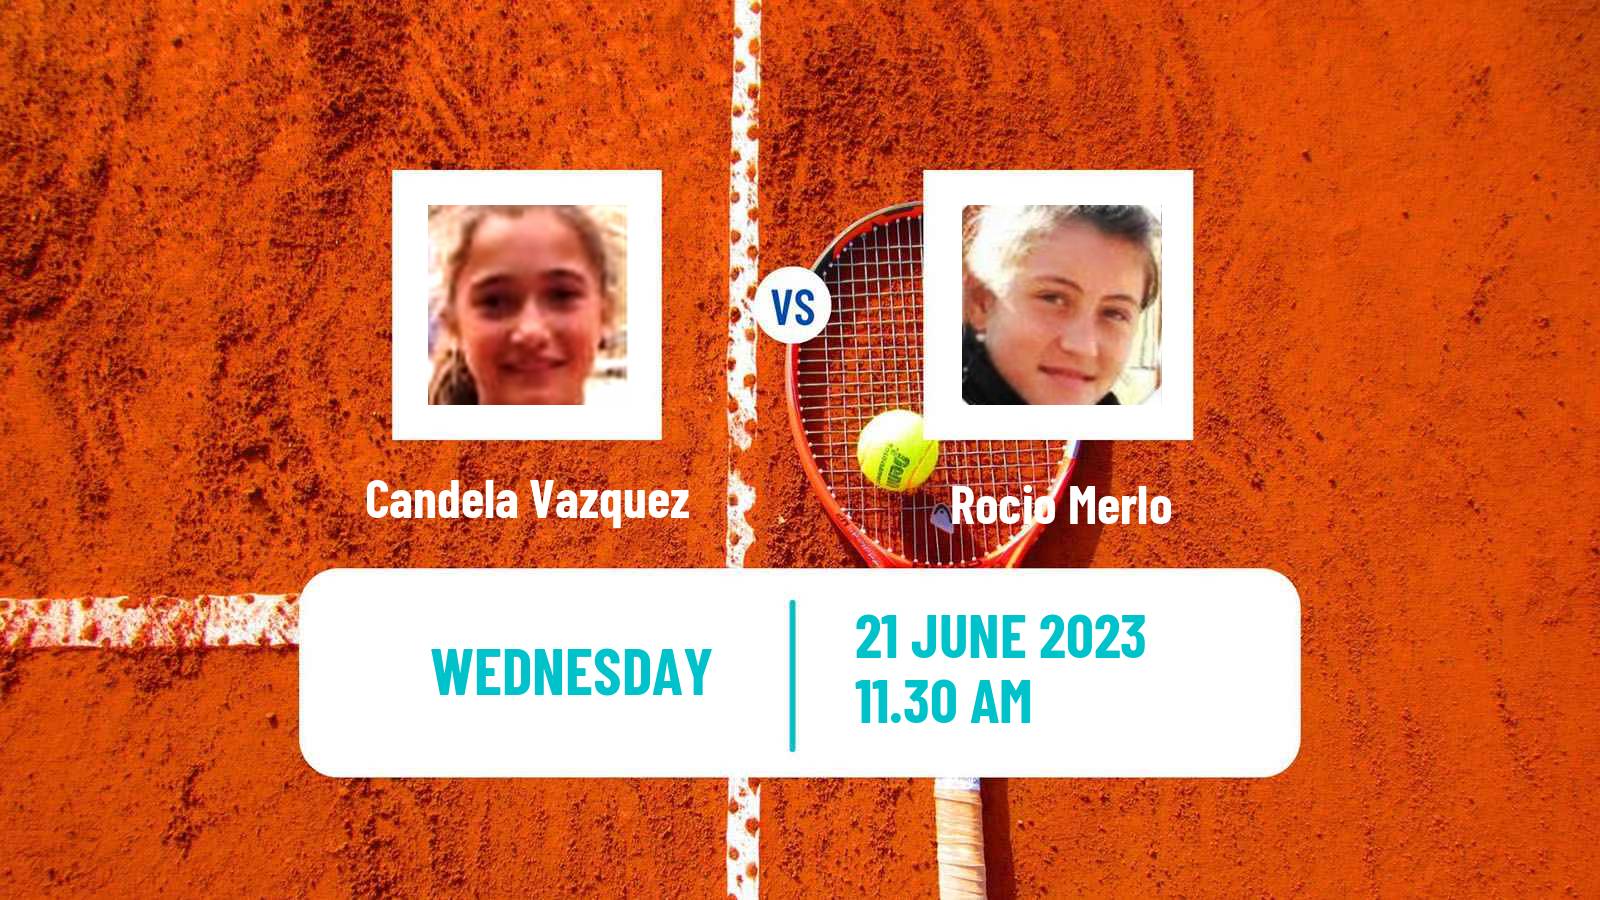 Tennis ITF W15 Buenos Aires Women Candela Vazquez - Rocio Merlo